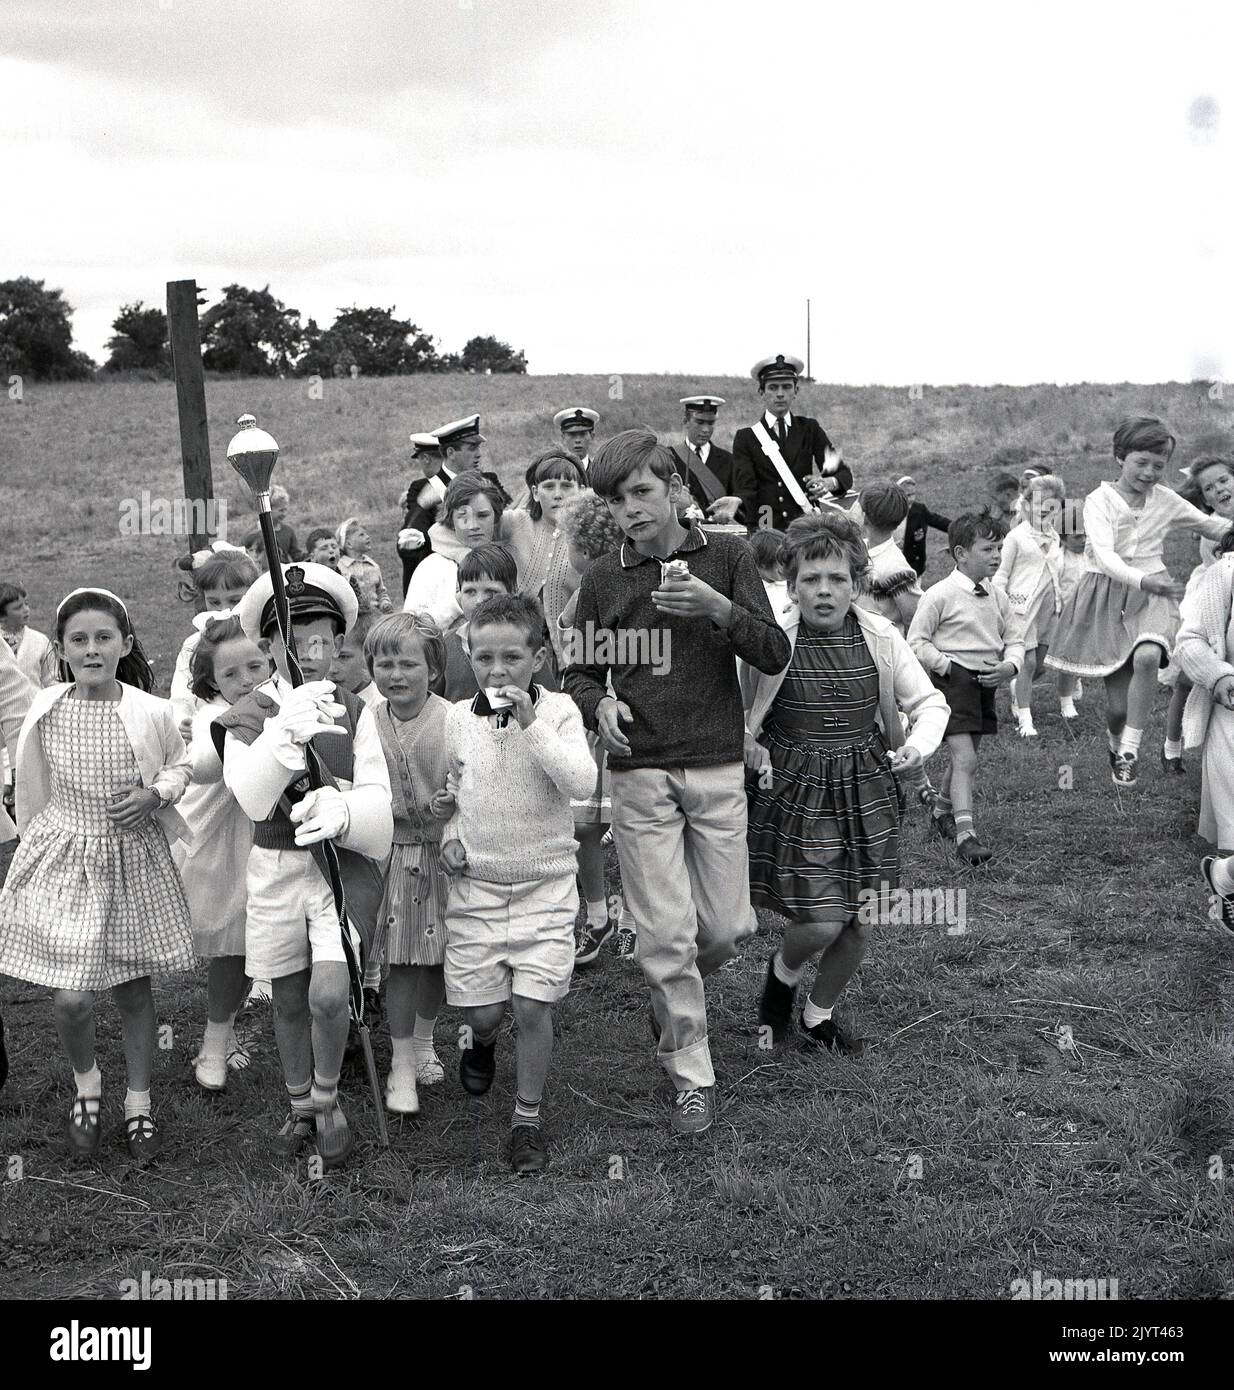 1965, historique, enfants à l'extérieur dans un champ près d'un domaine de logement prenant part au gala du North Queensferry, Fife, Écosse, Royaume-Uni, les enfants suivent un garçon habillé comme un tambour majeur tenant un mace. Banque D'Images